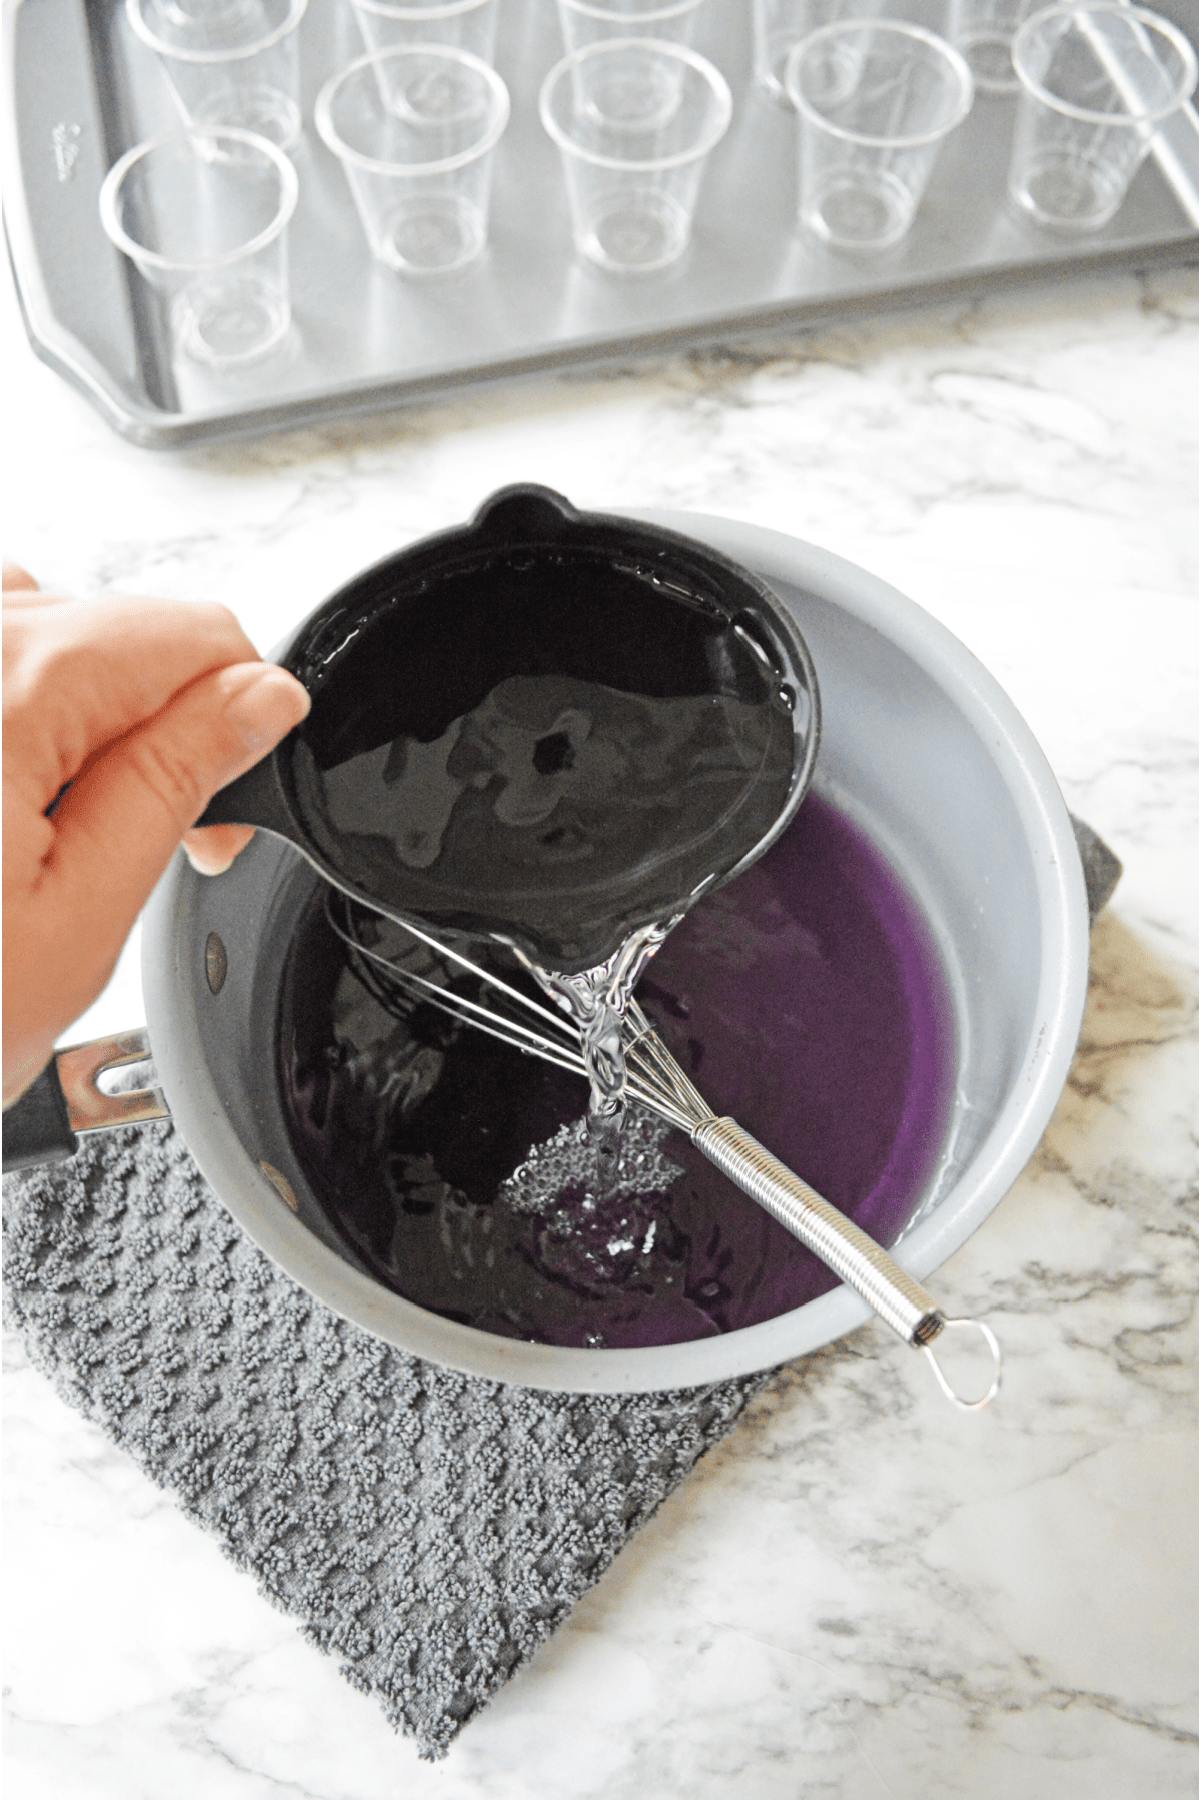 Adding cold water to purple jello mix